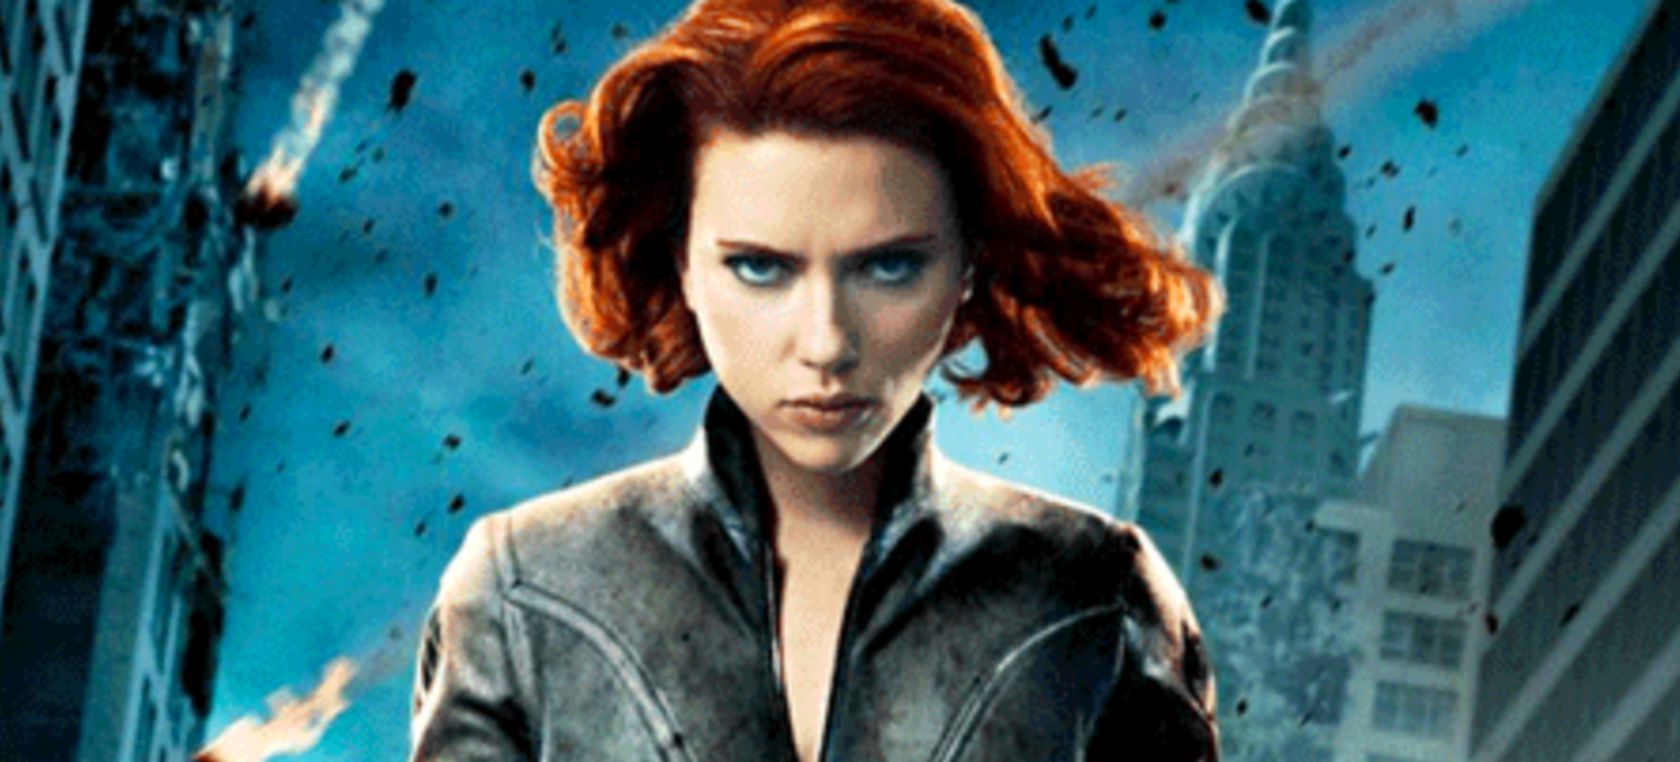 Primeras Imágenes De Scarlett Johansson En El Set De Black Widow Cine Y Televisión Los40